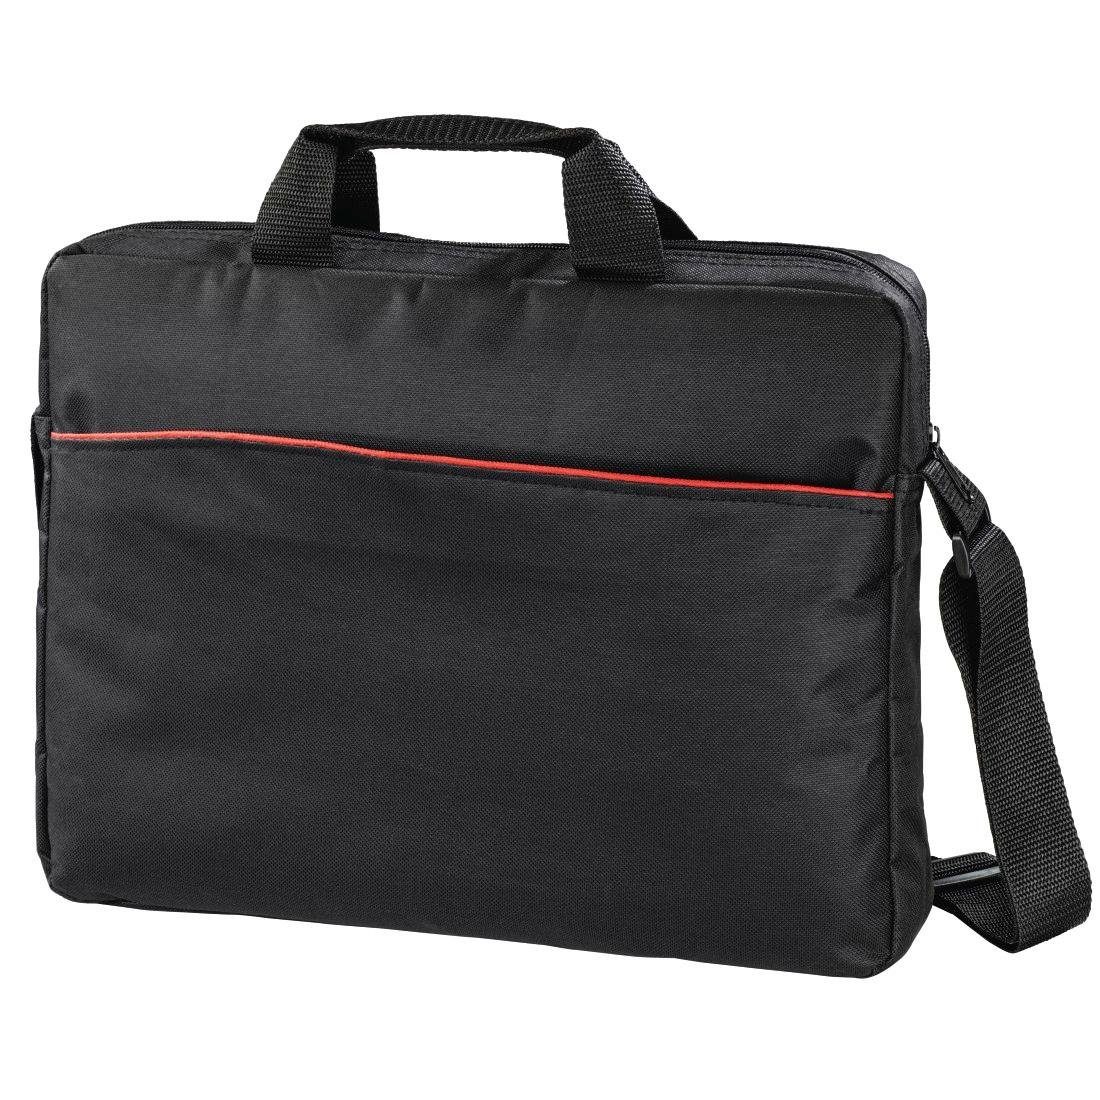 Hama Laptoptasche »Notebooktasche Laptoptasche bis 44cm (17,3)  Computertasche Umhängetasche Tortuga I, 17 Zoll« online kaufen | OTTO